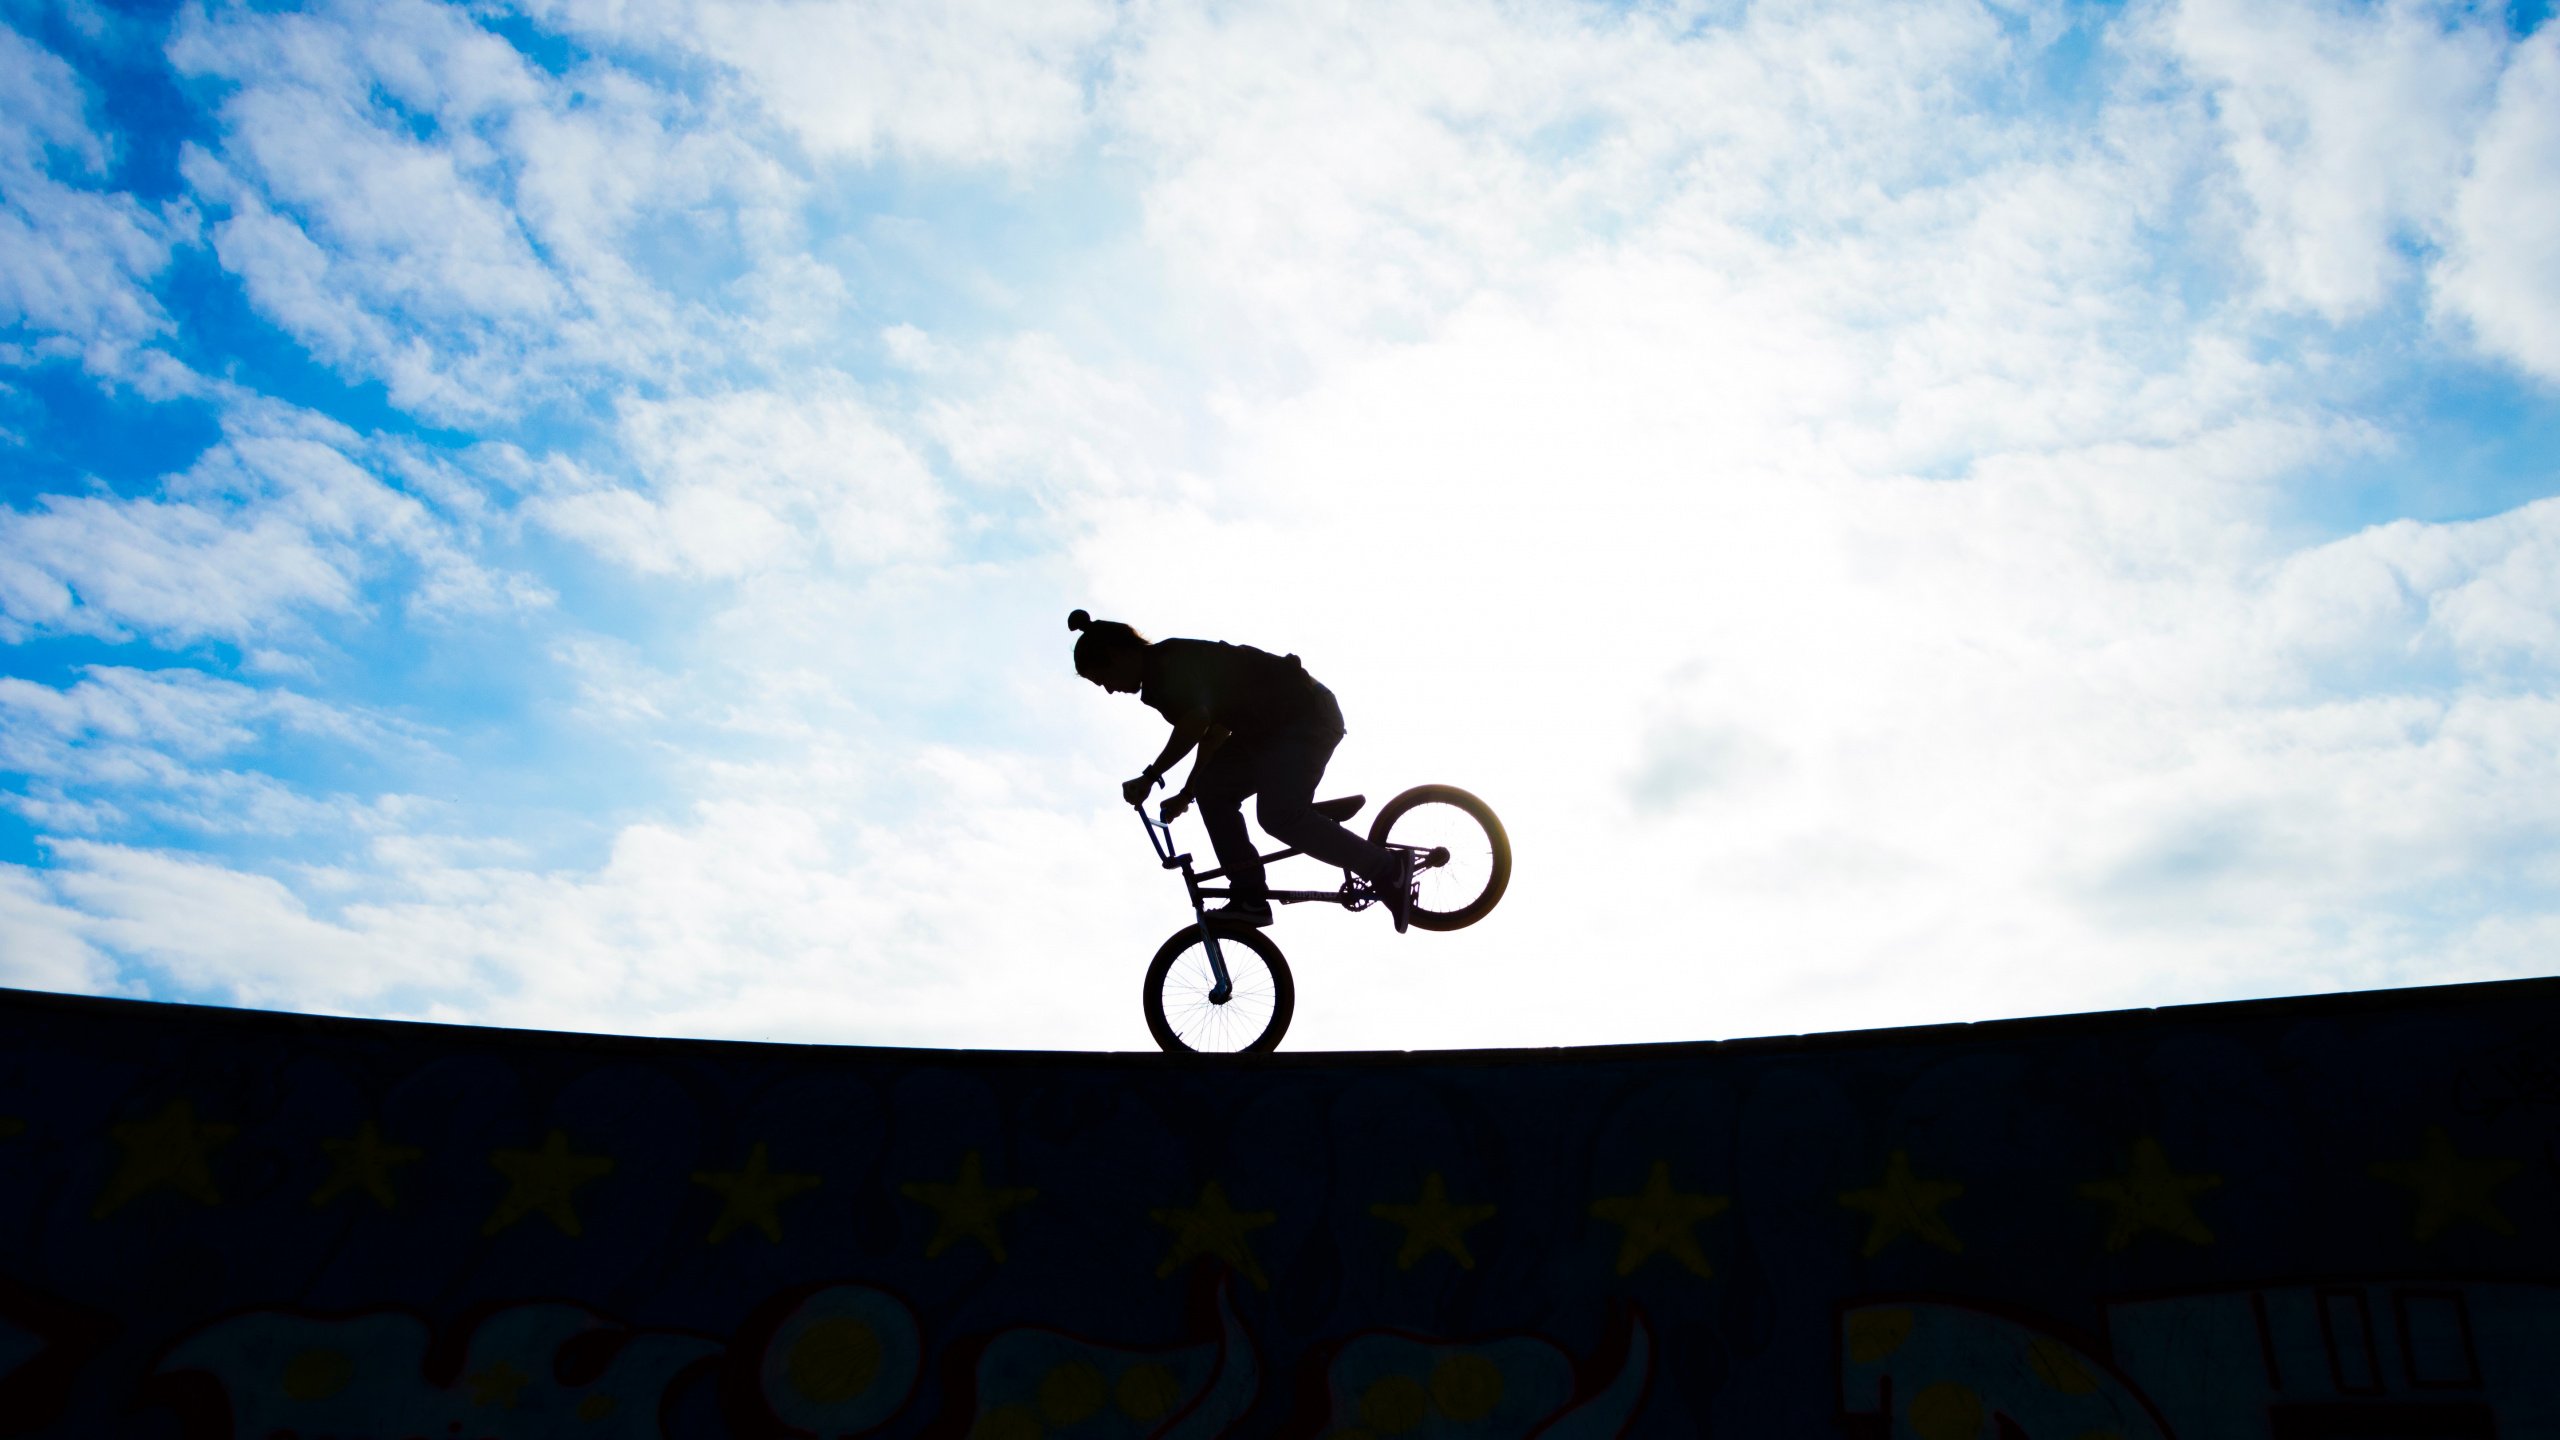 Man Riding Bicycle on Mid Air Sous Ciel Bleu Pendant la Journée. Wallpaper in 2560x1440 Resolution